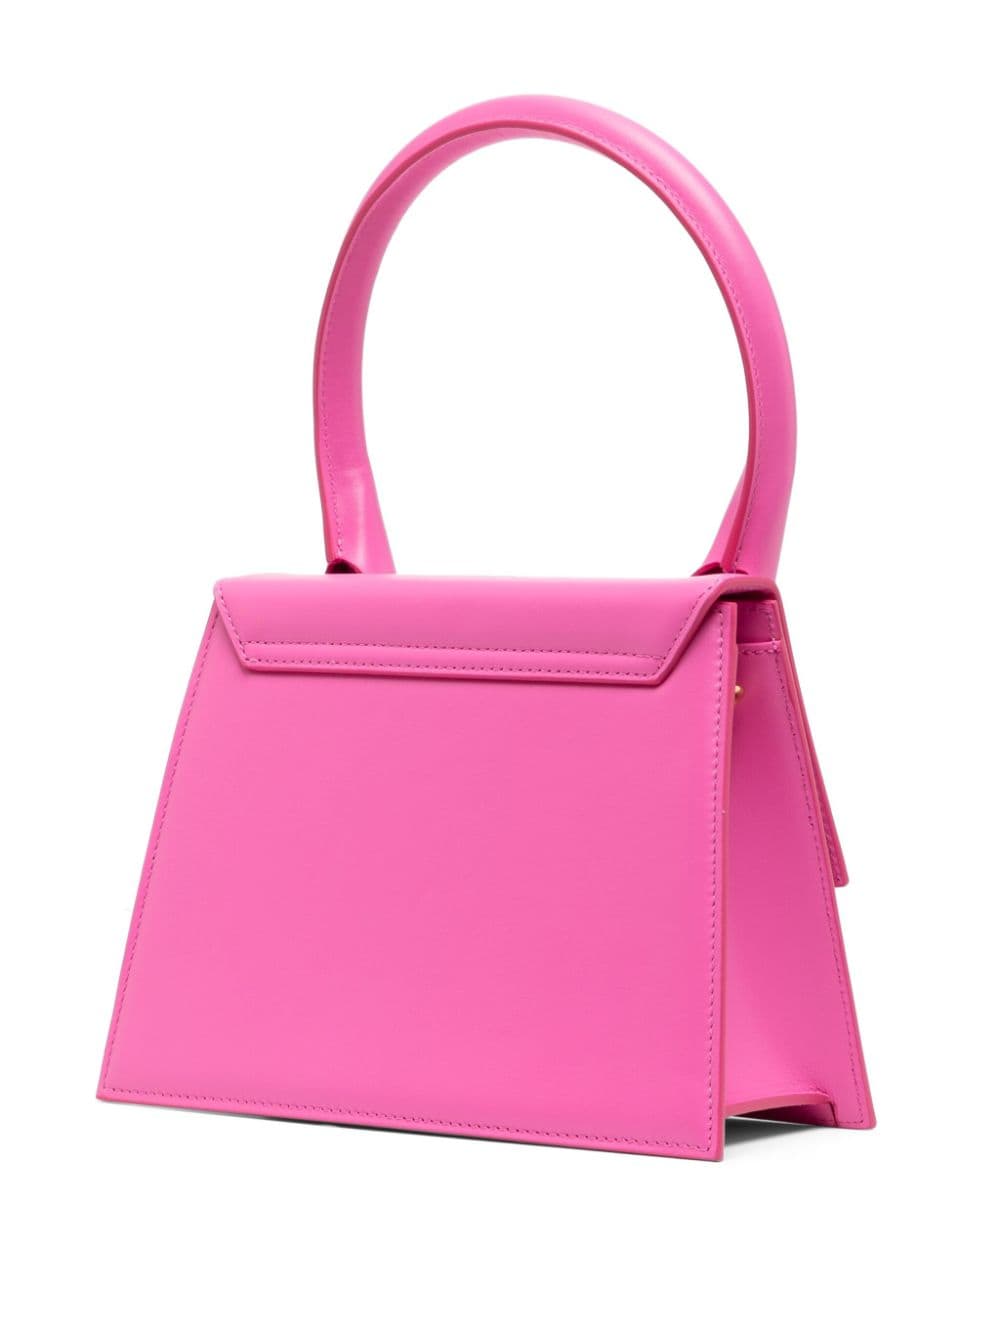 JACQUEMUS Bubblegum Pink Leather Handbag with Detachable Shoulder Strap